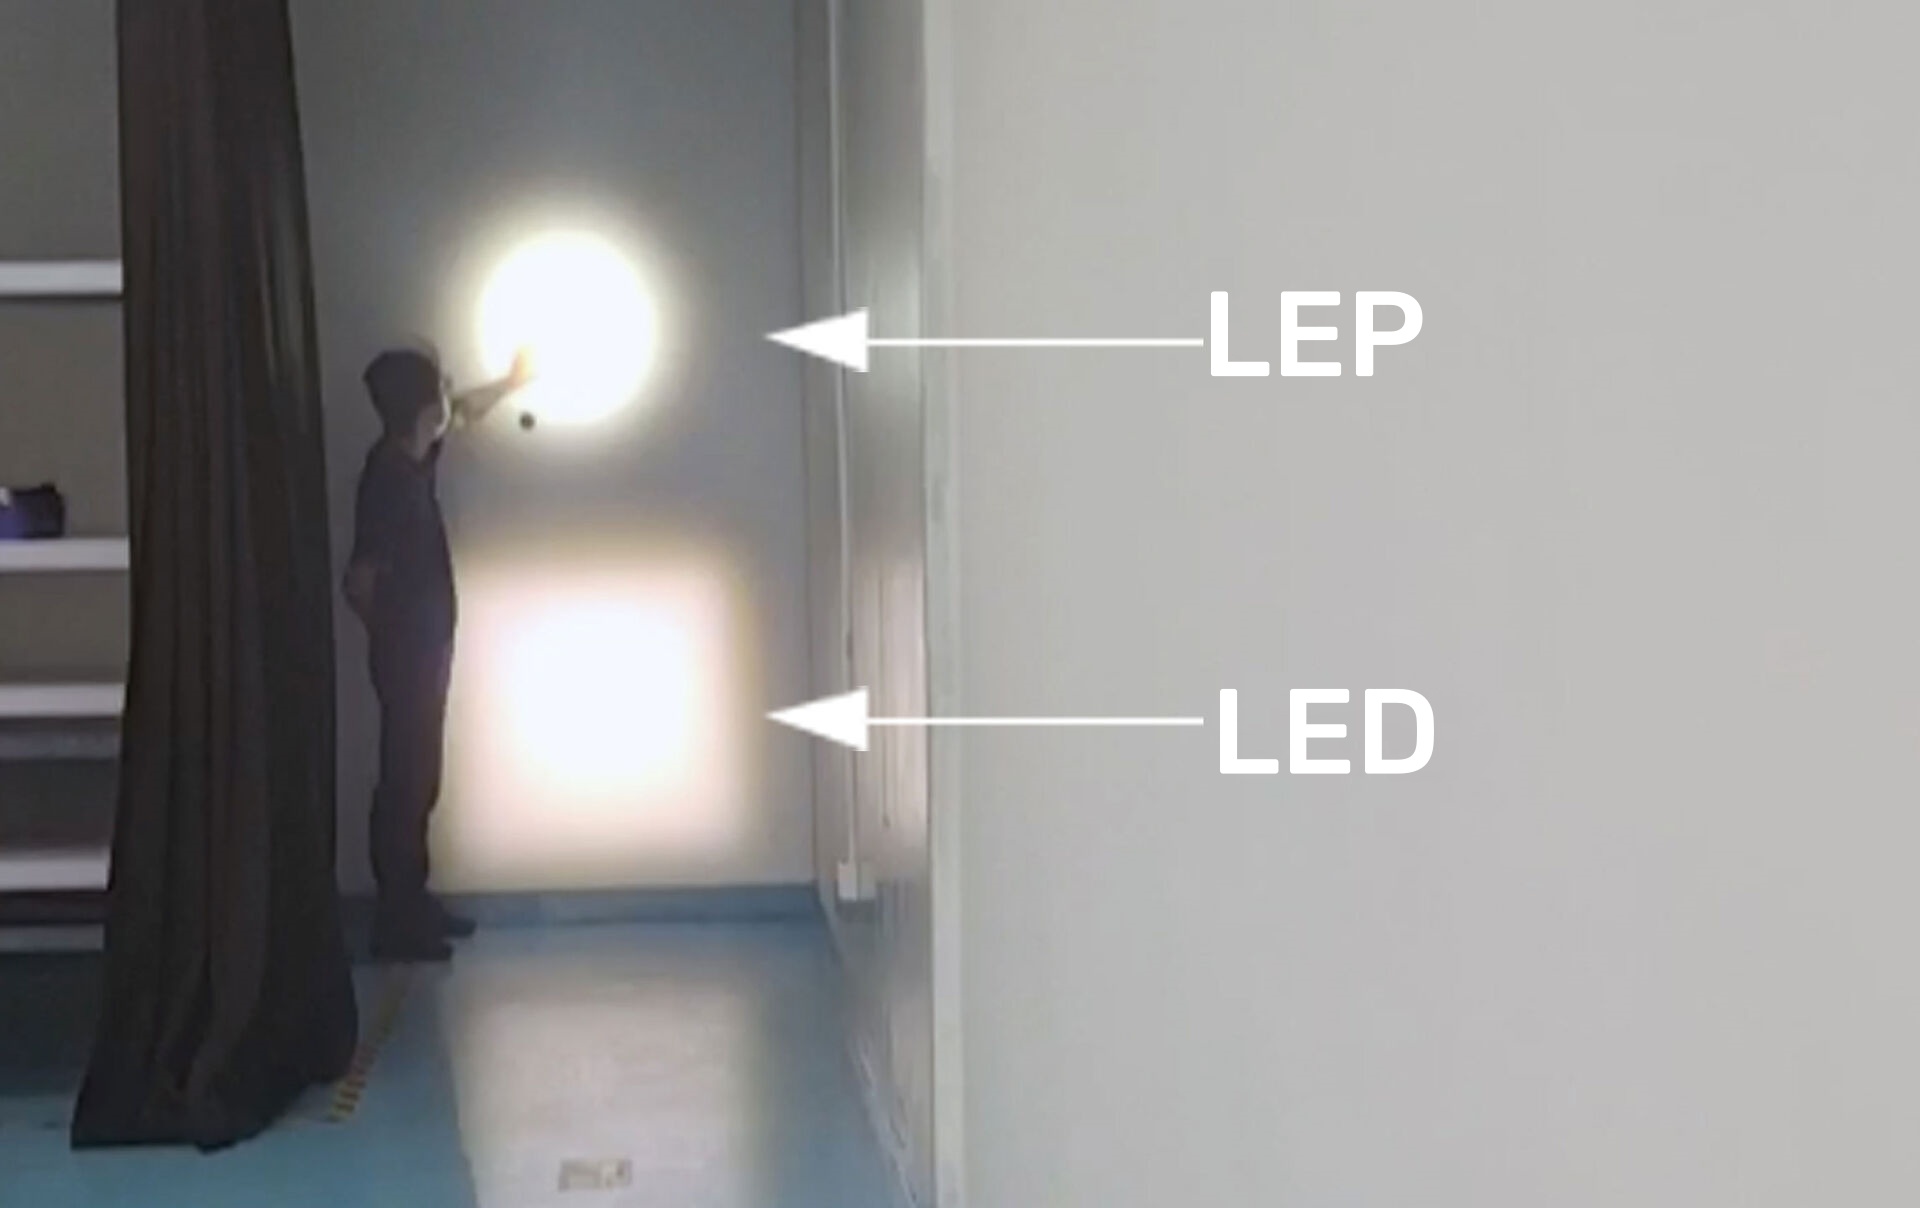 Revolucionando a iluminação: a superioridade do LEP sobre LED na tecnologia de iluminação